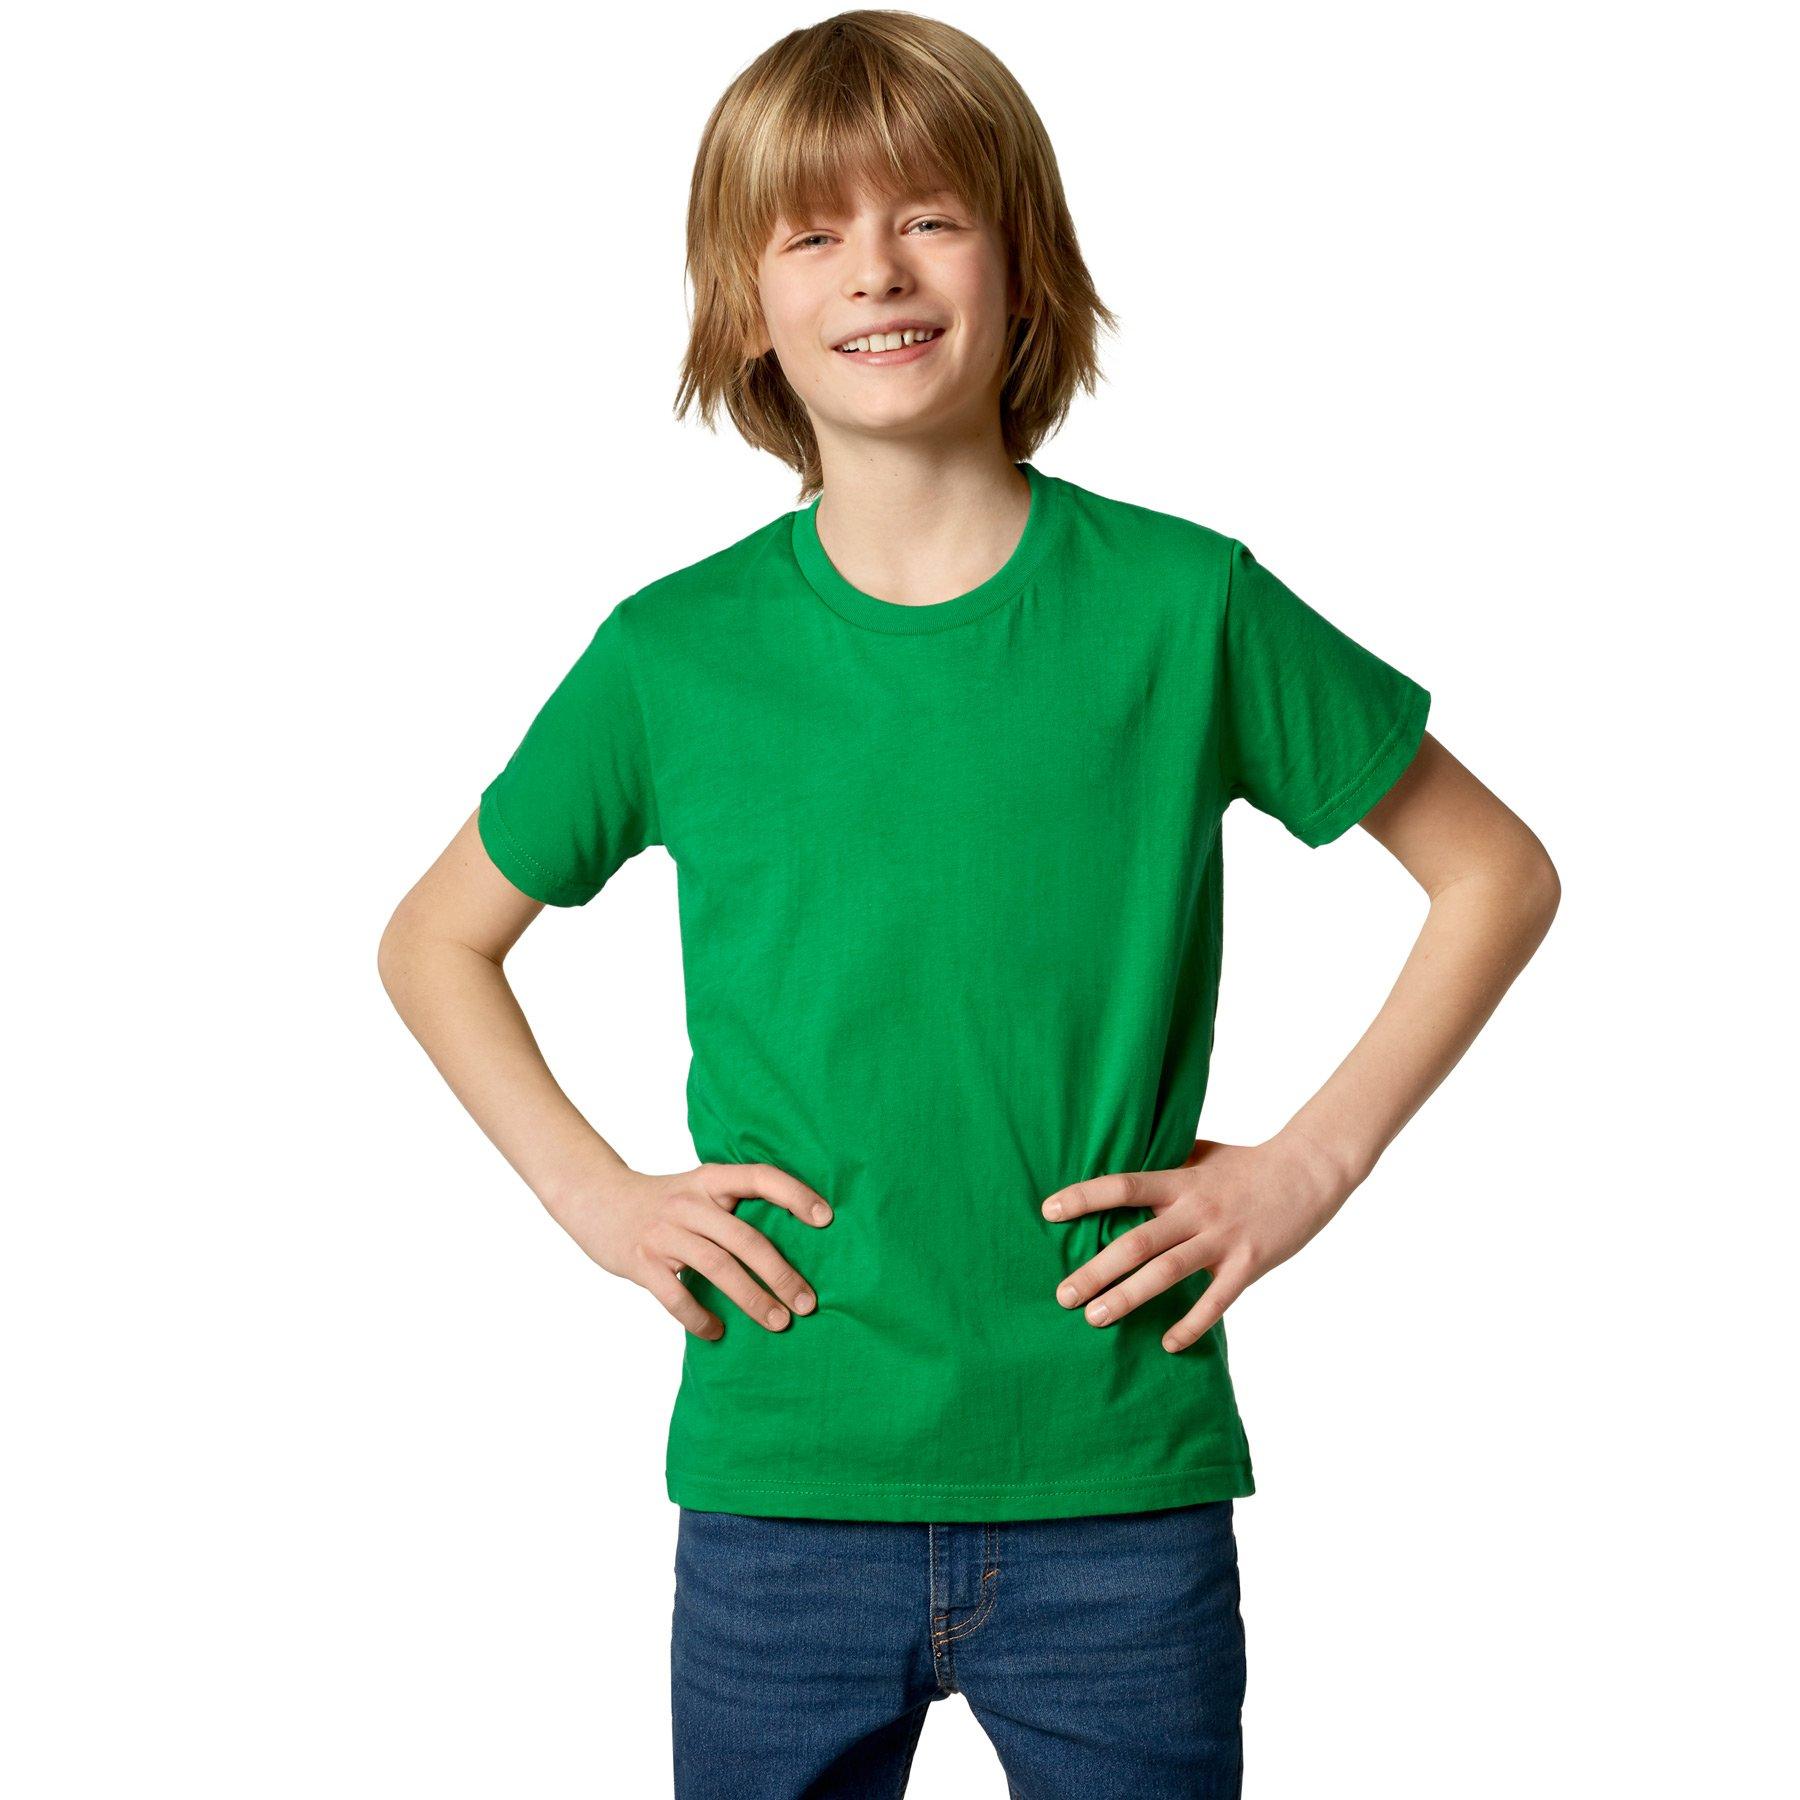 T-shirt Kinder Jungen Grün 116 von Tectake